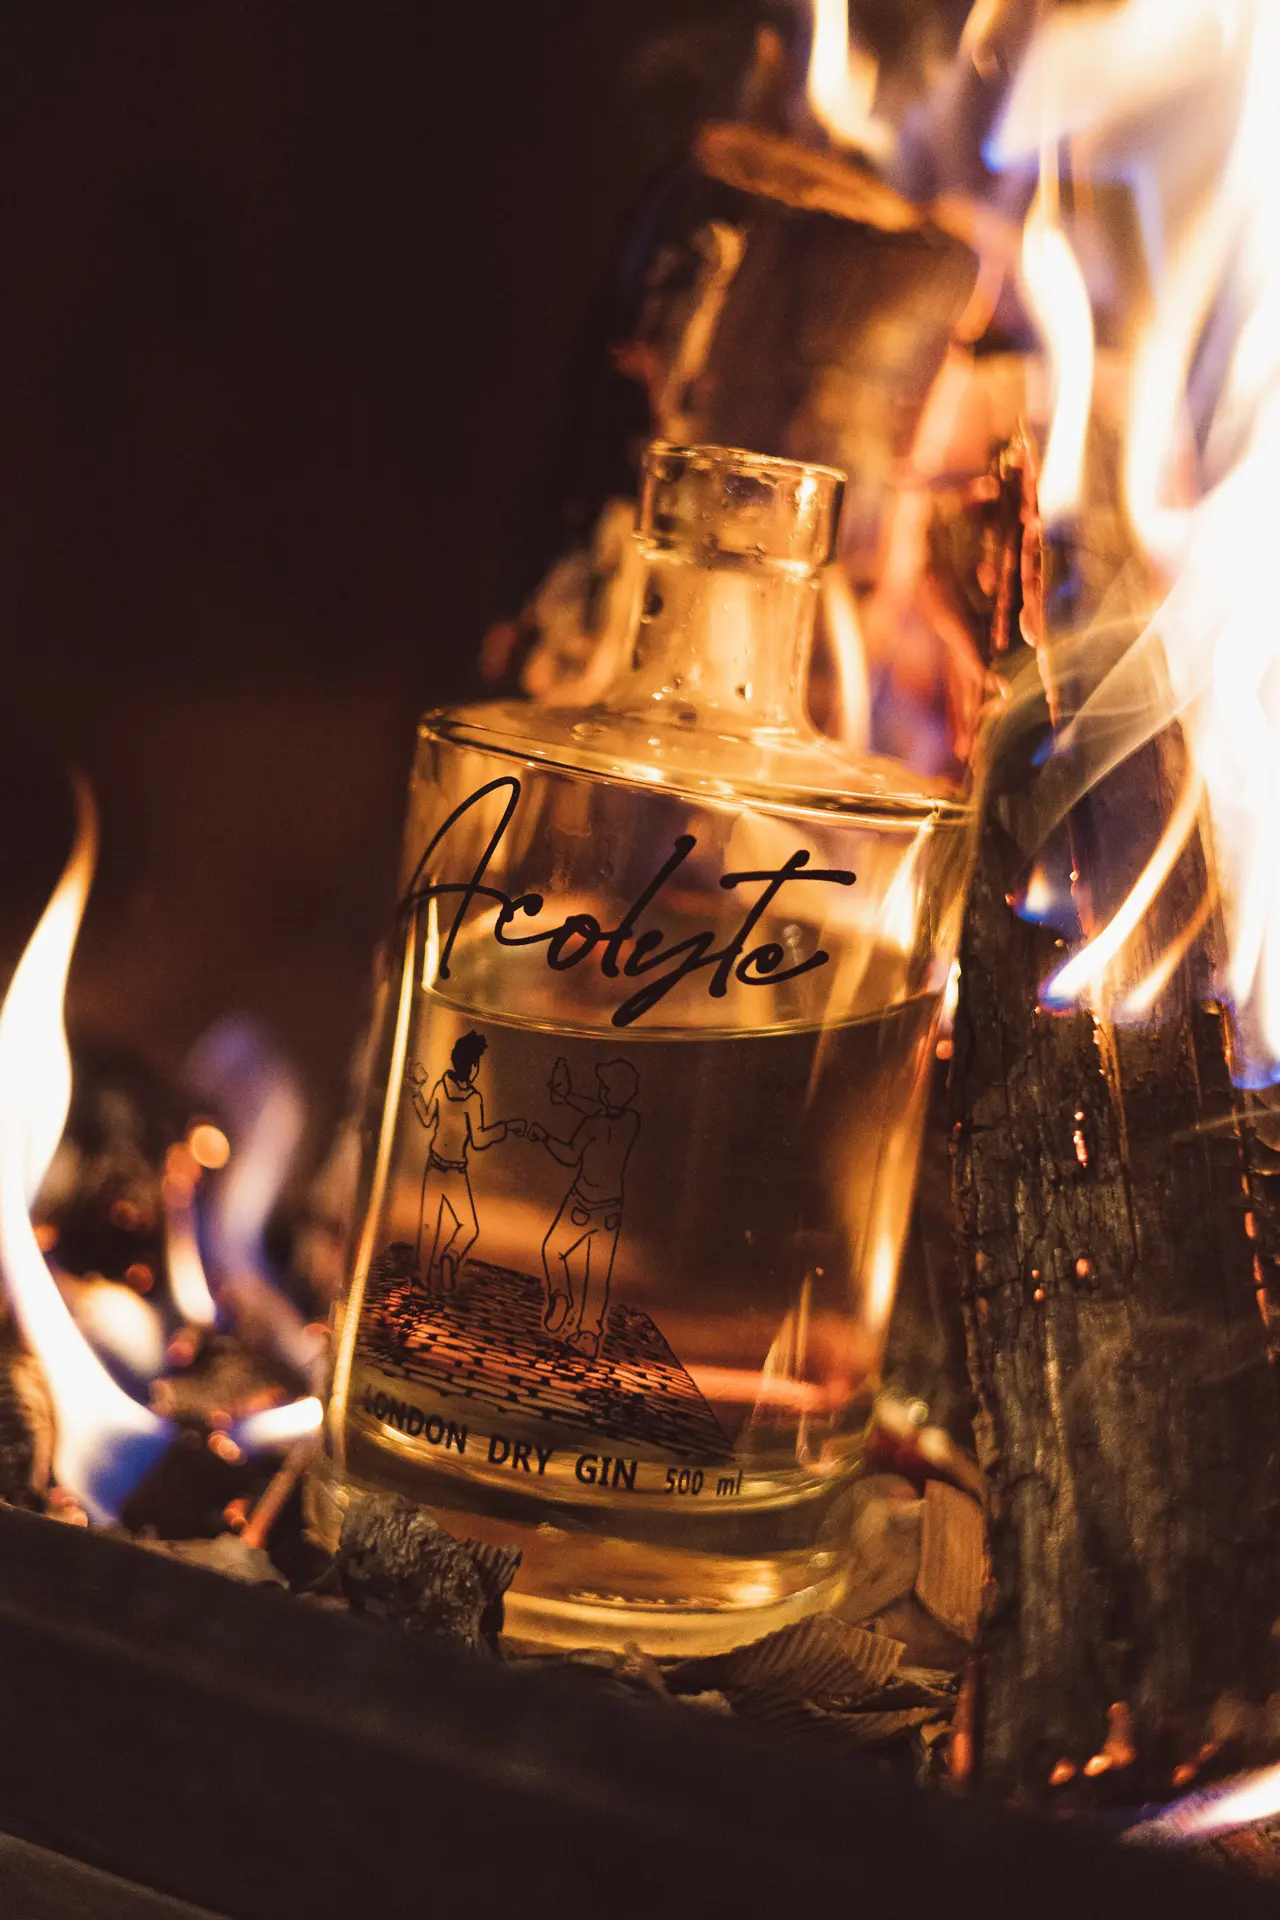 Bouteille de Gin Acolyte devant un feu, permettant de la mettre en valeur et de montrer la pureté de la boisson dans une ambiance réconfortante.